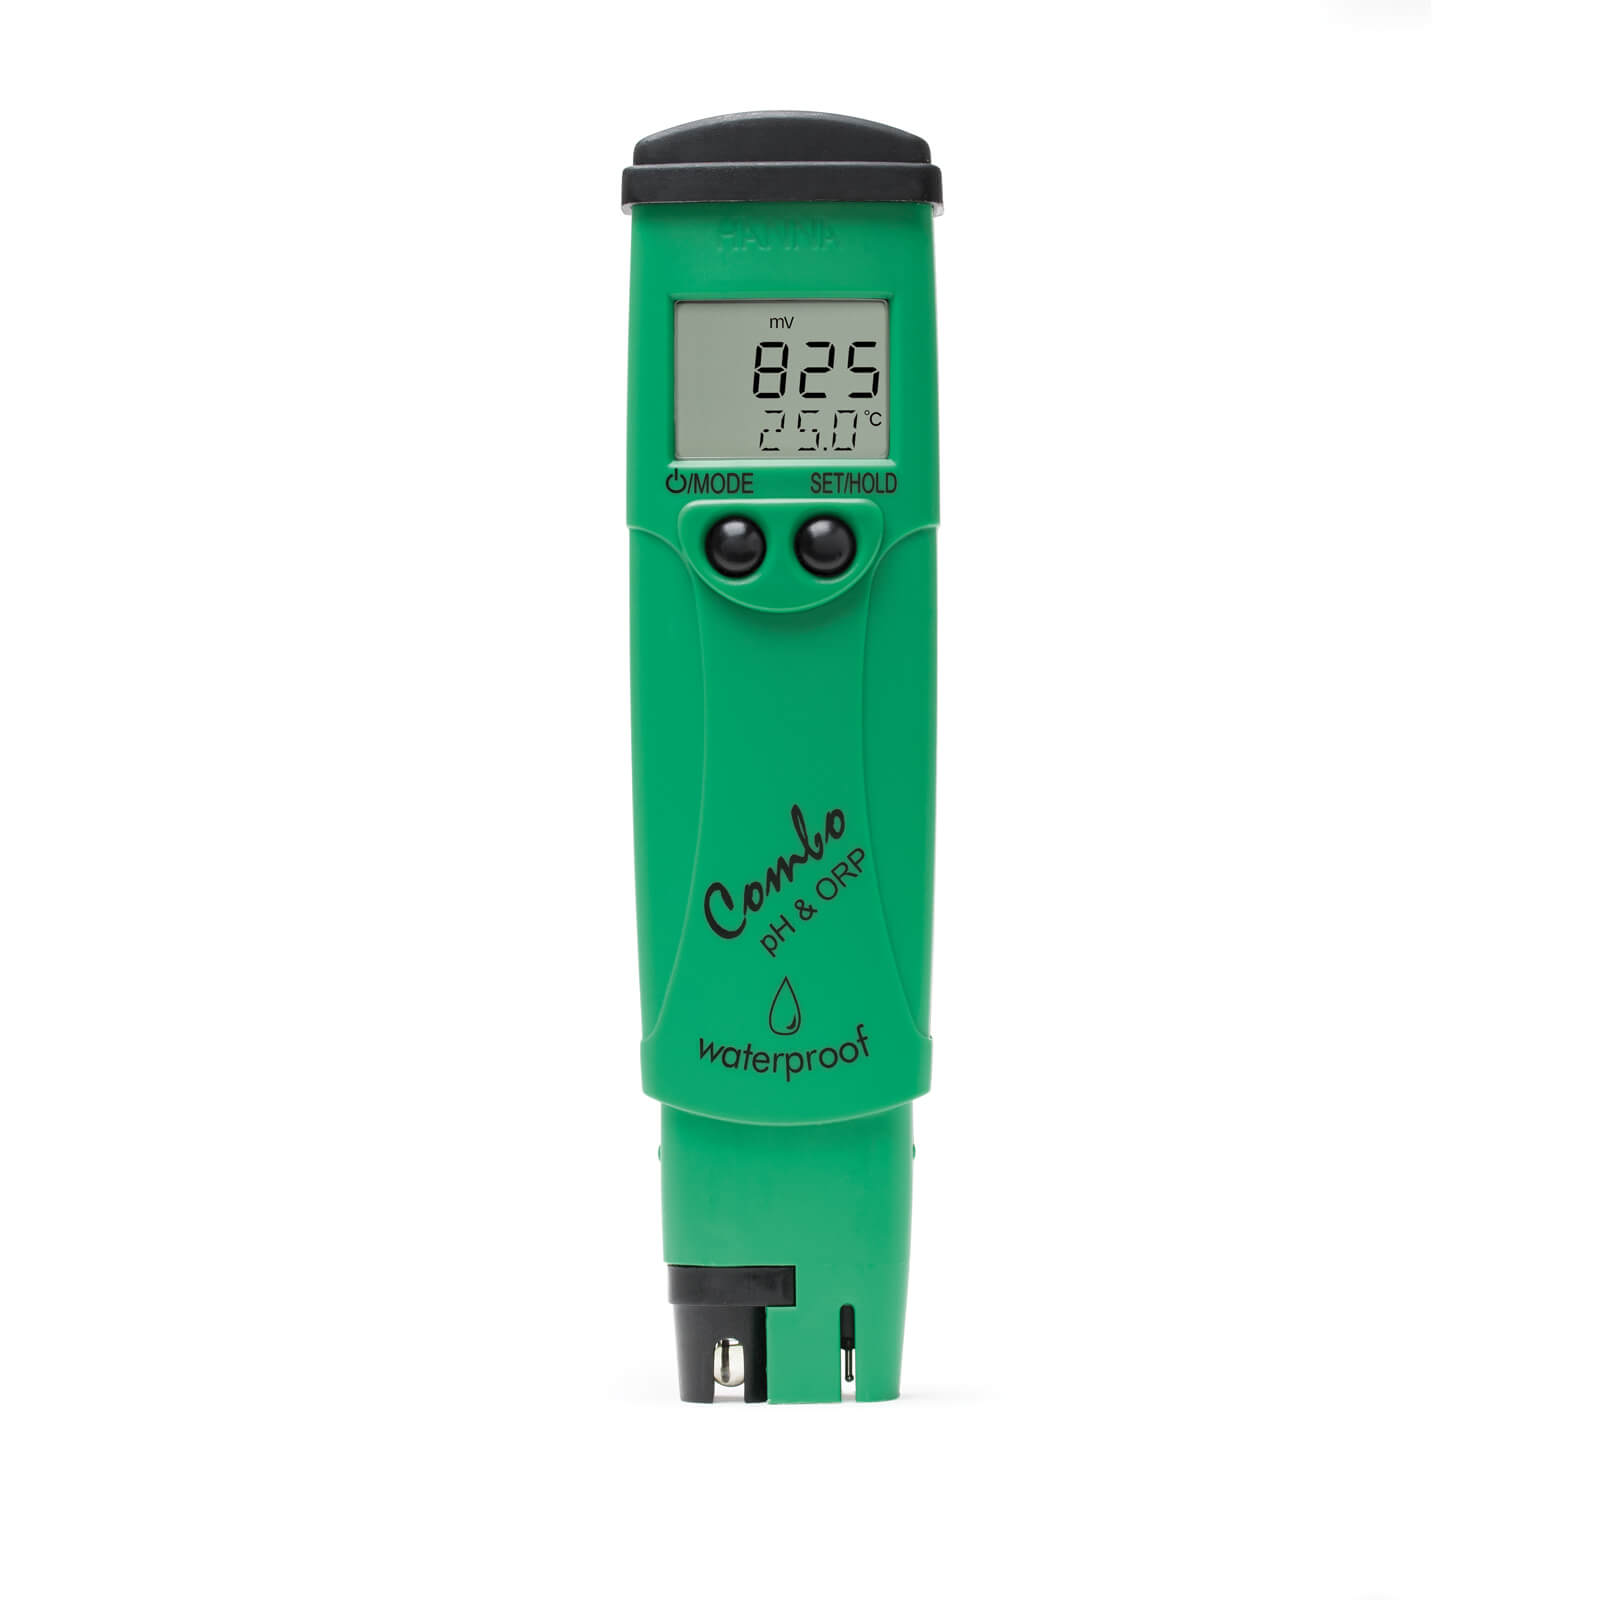 Testeurs De Piles - Batterie Testeur Numérique Détecteur Capacité Outil  Mesure 90 X 60 Mm